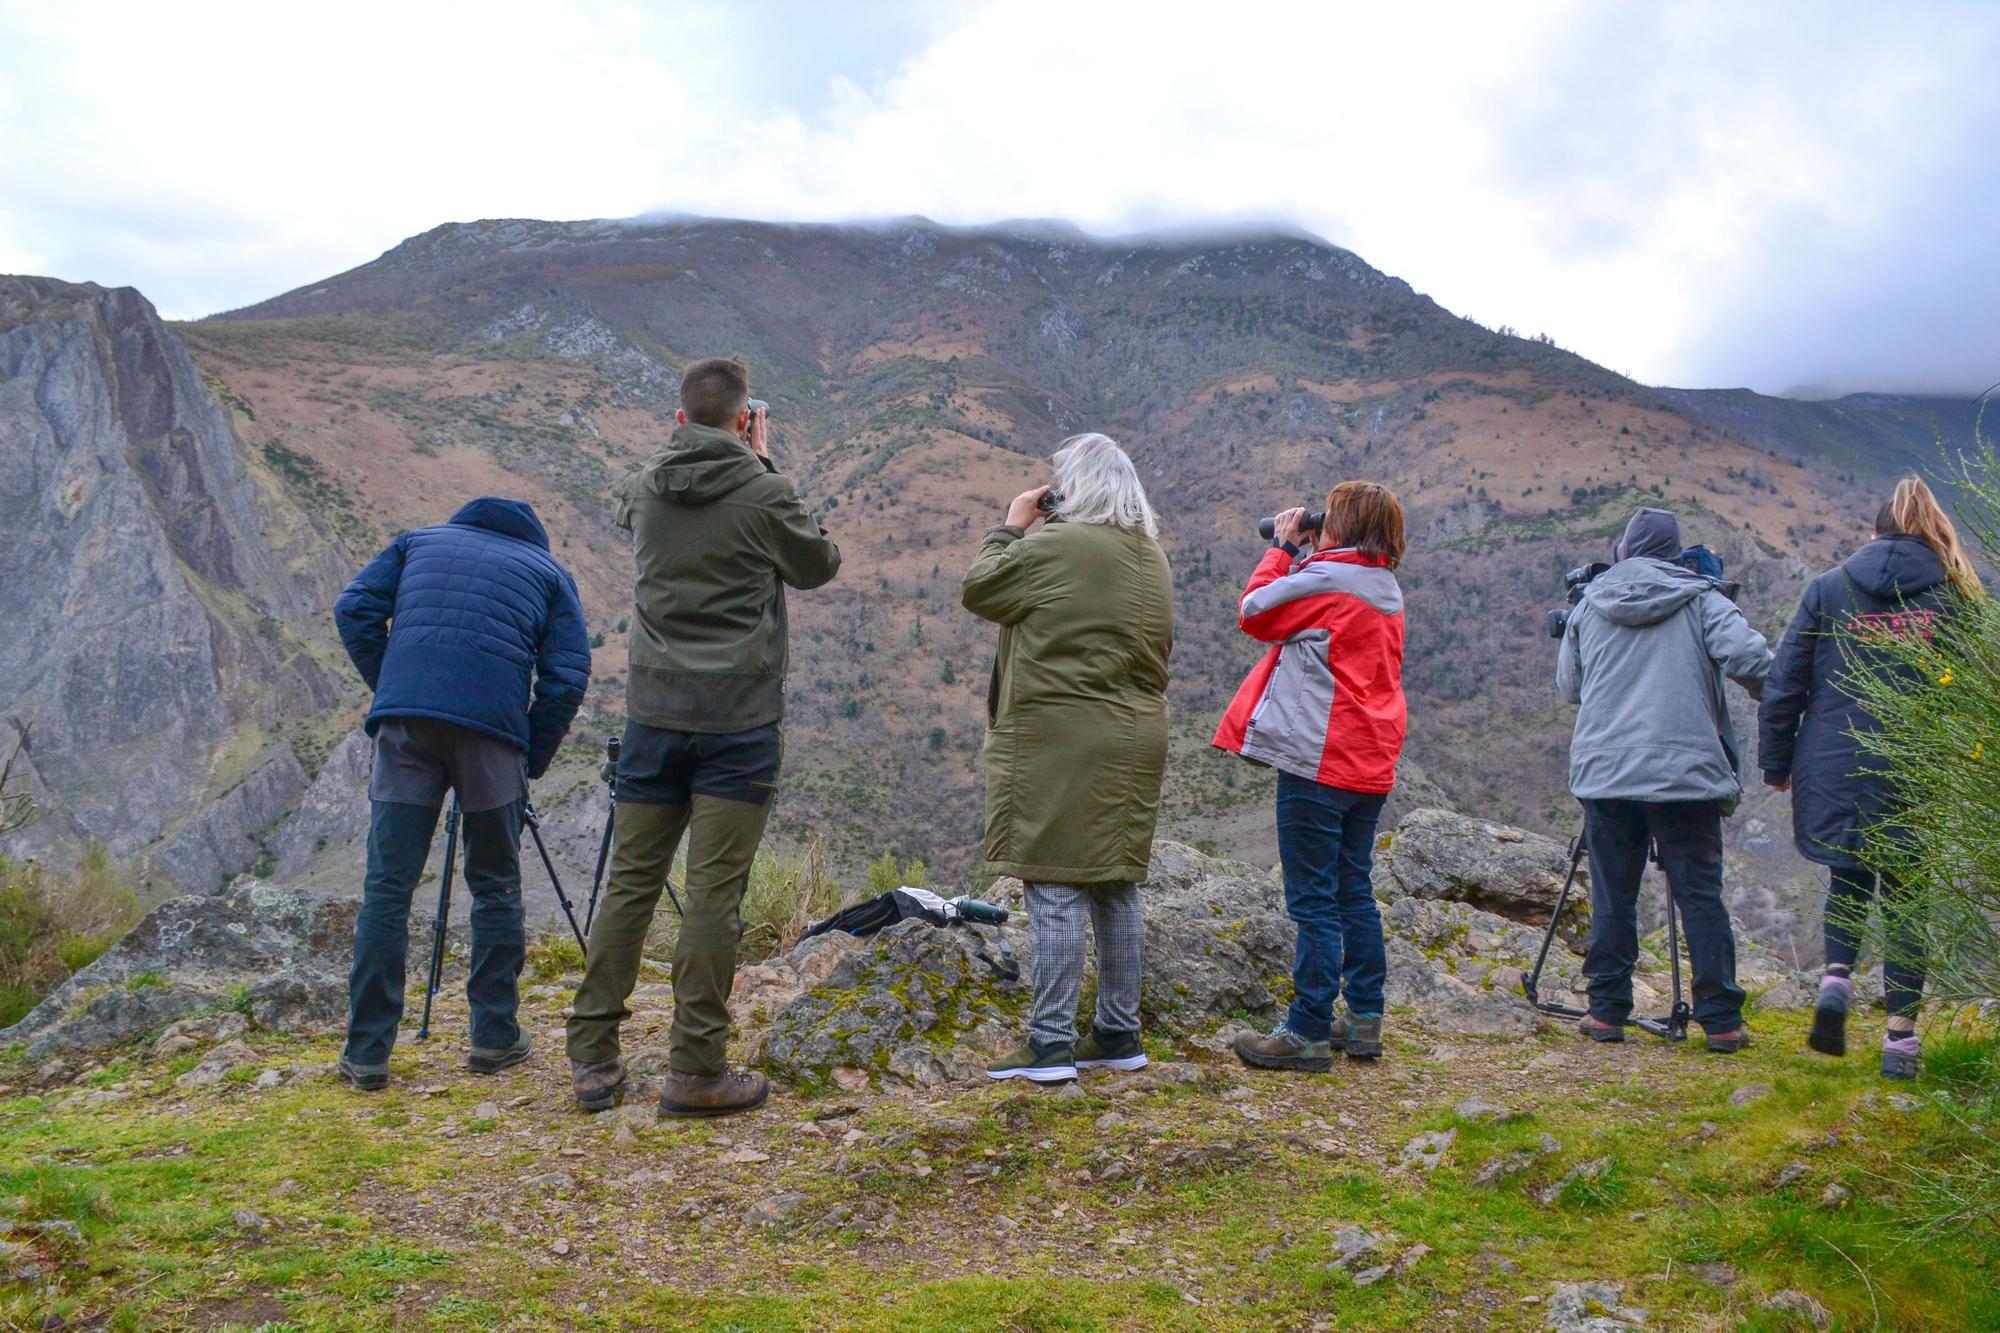 Un grupu de viaxeros, a primer hora de la mañana, participando nun avistamientu oseru en Cangas con Monte Activu.